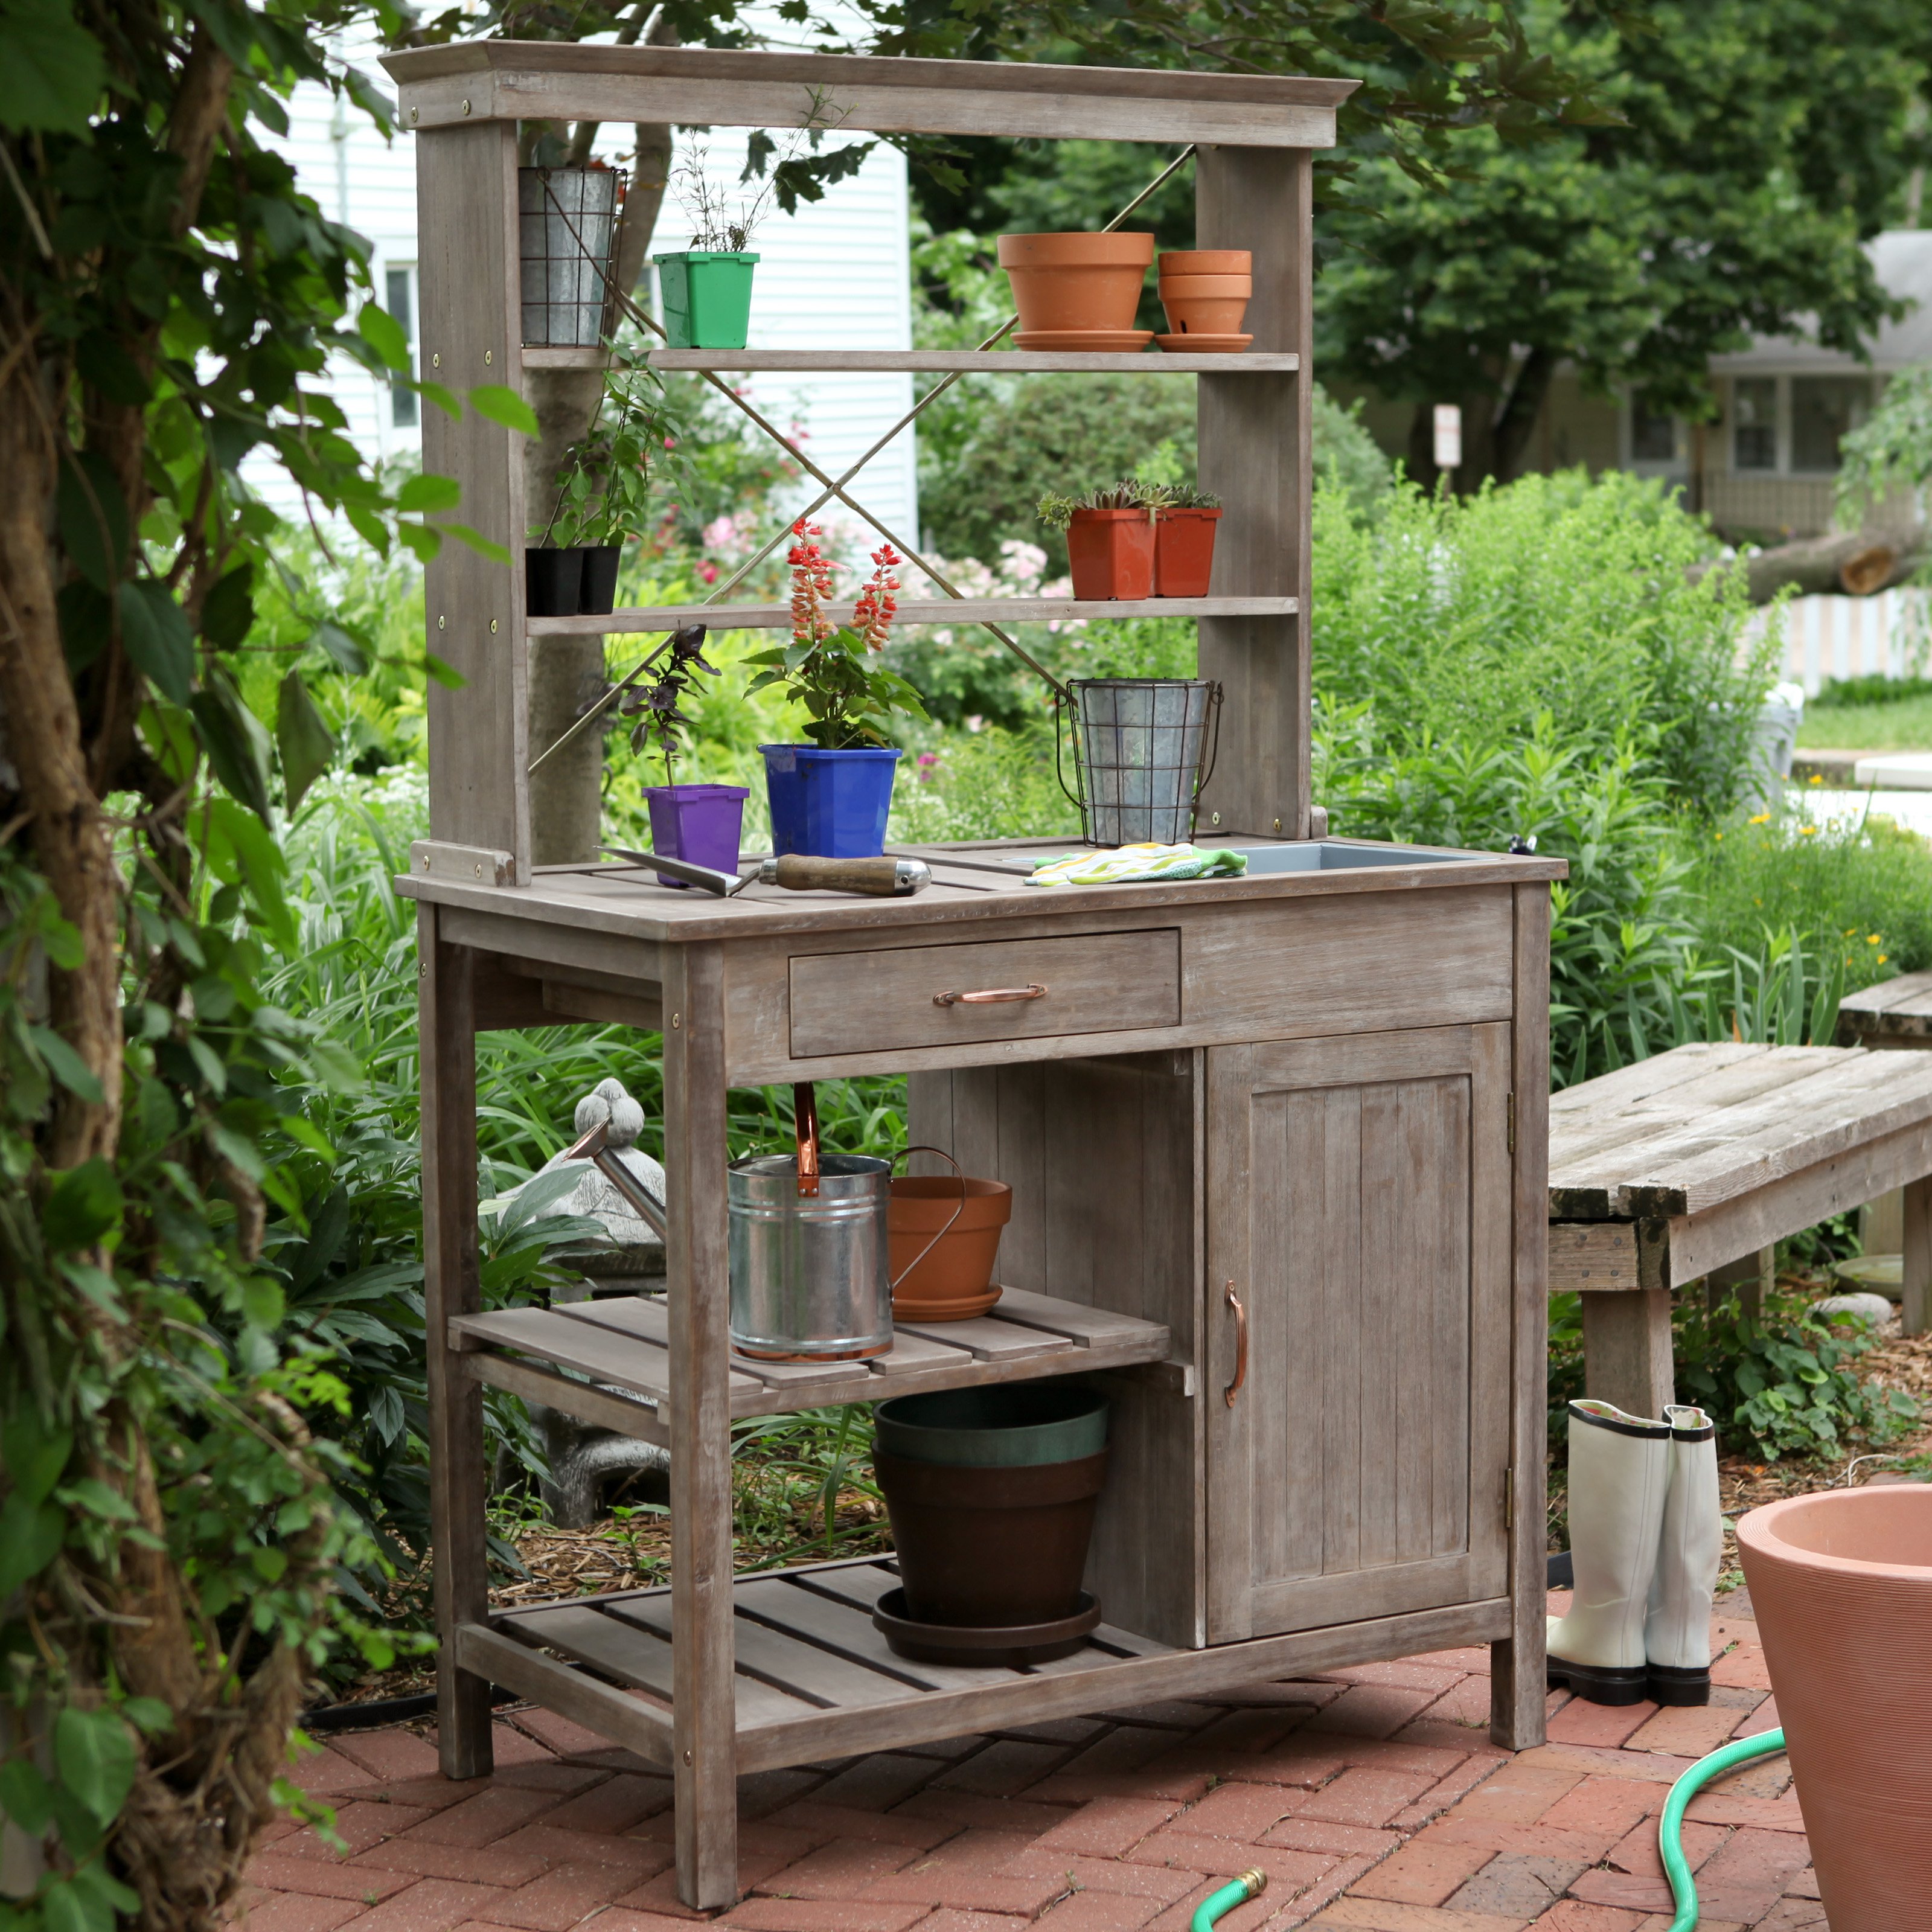 Outdoor Garden Potting Bench Design Ideas Decorelated